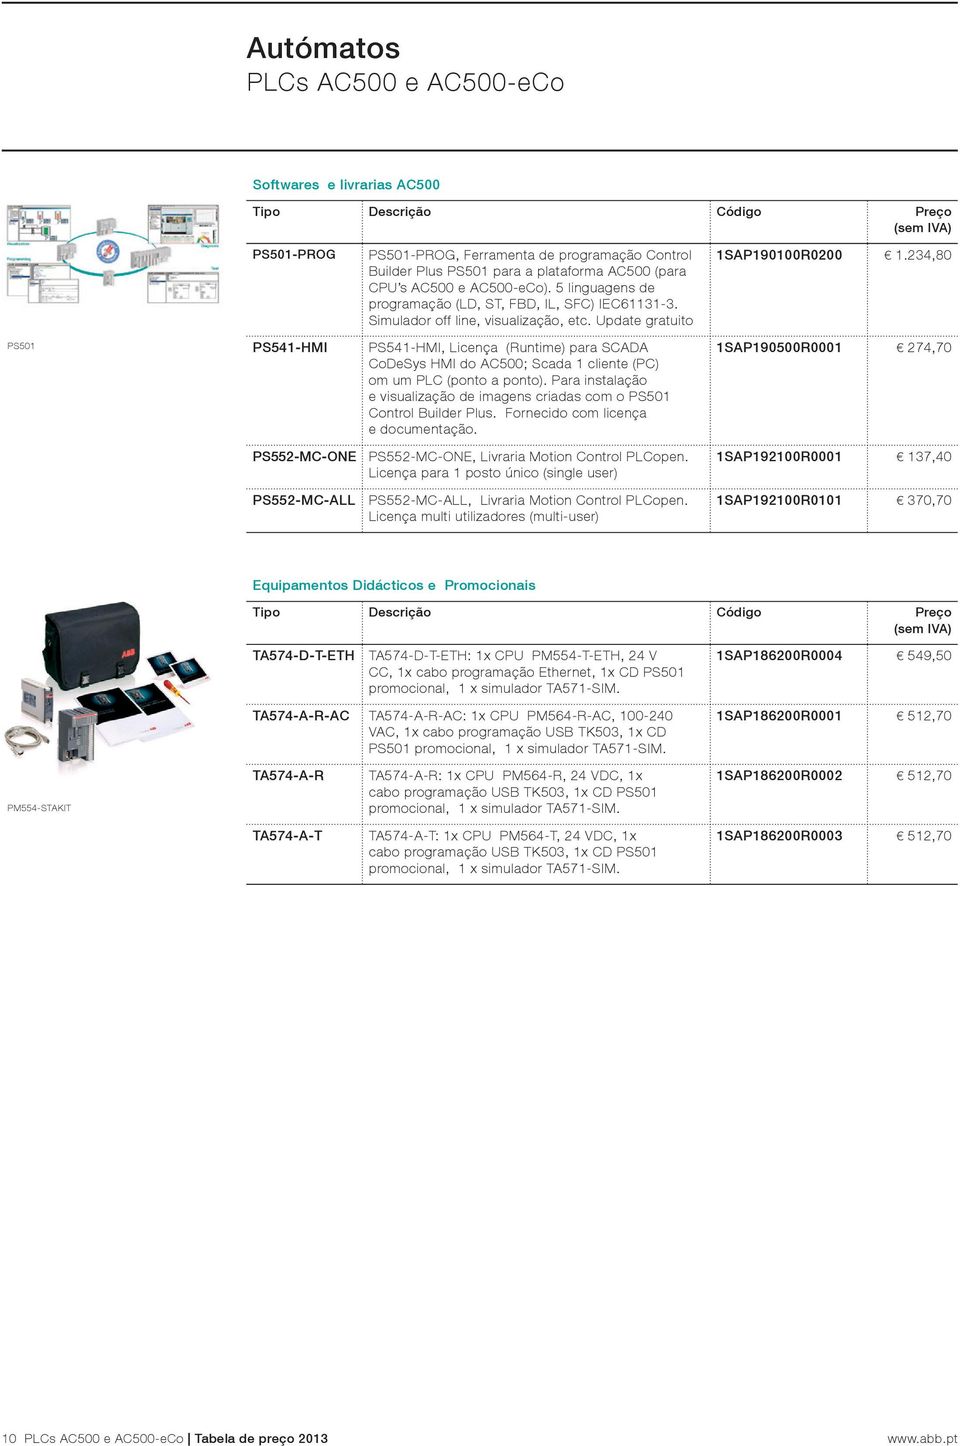 234,80 PS501 PS541-HMI PS541-HMI, Licença (Runtime) para SCADA CoDeSys HMI do AC500; Scada 1 cliente (PC) om um PLC (ponto a ponto).